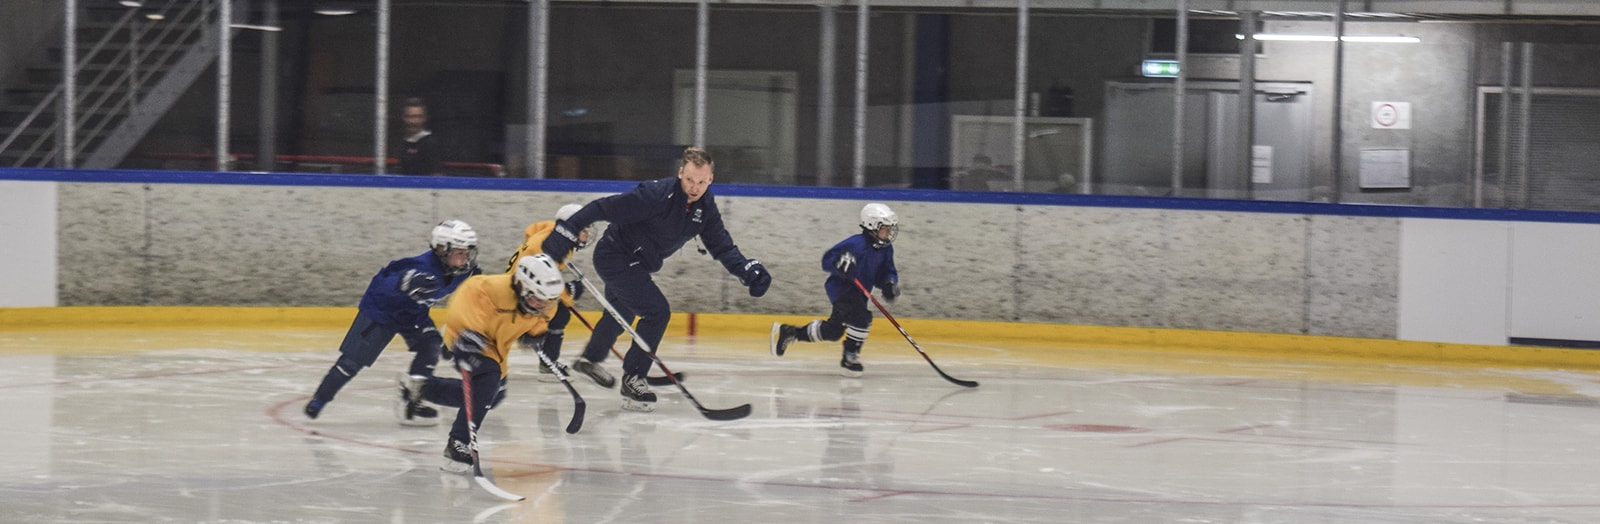 35-årige Jonas Lyngskov Reimer fra Herning har været en del af et ishockey-fællesskab det meste af sit liv – først som spiller med drømme om en ishockeykarriere, senere som international topdommer, og nu som træner for sønnen, Emils hold.